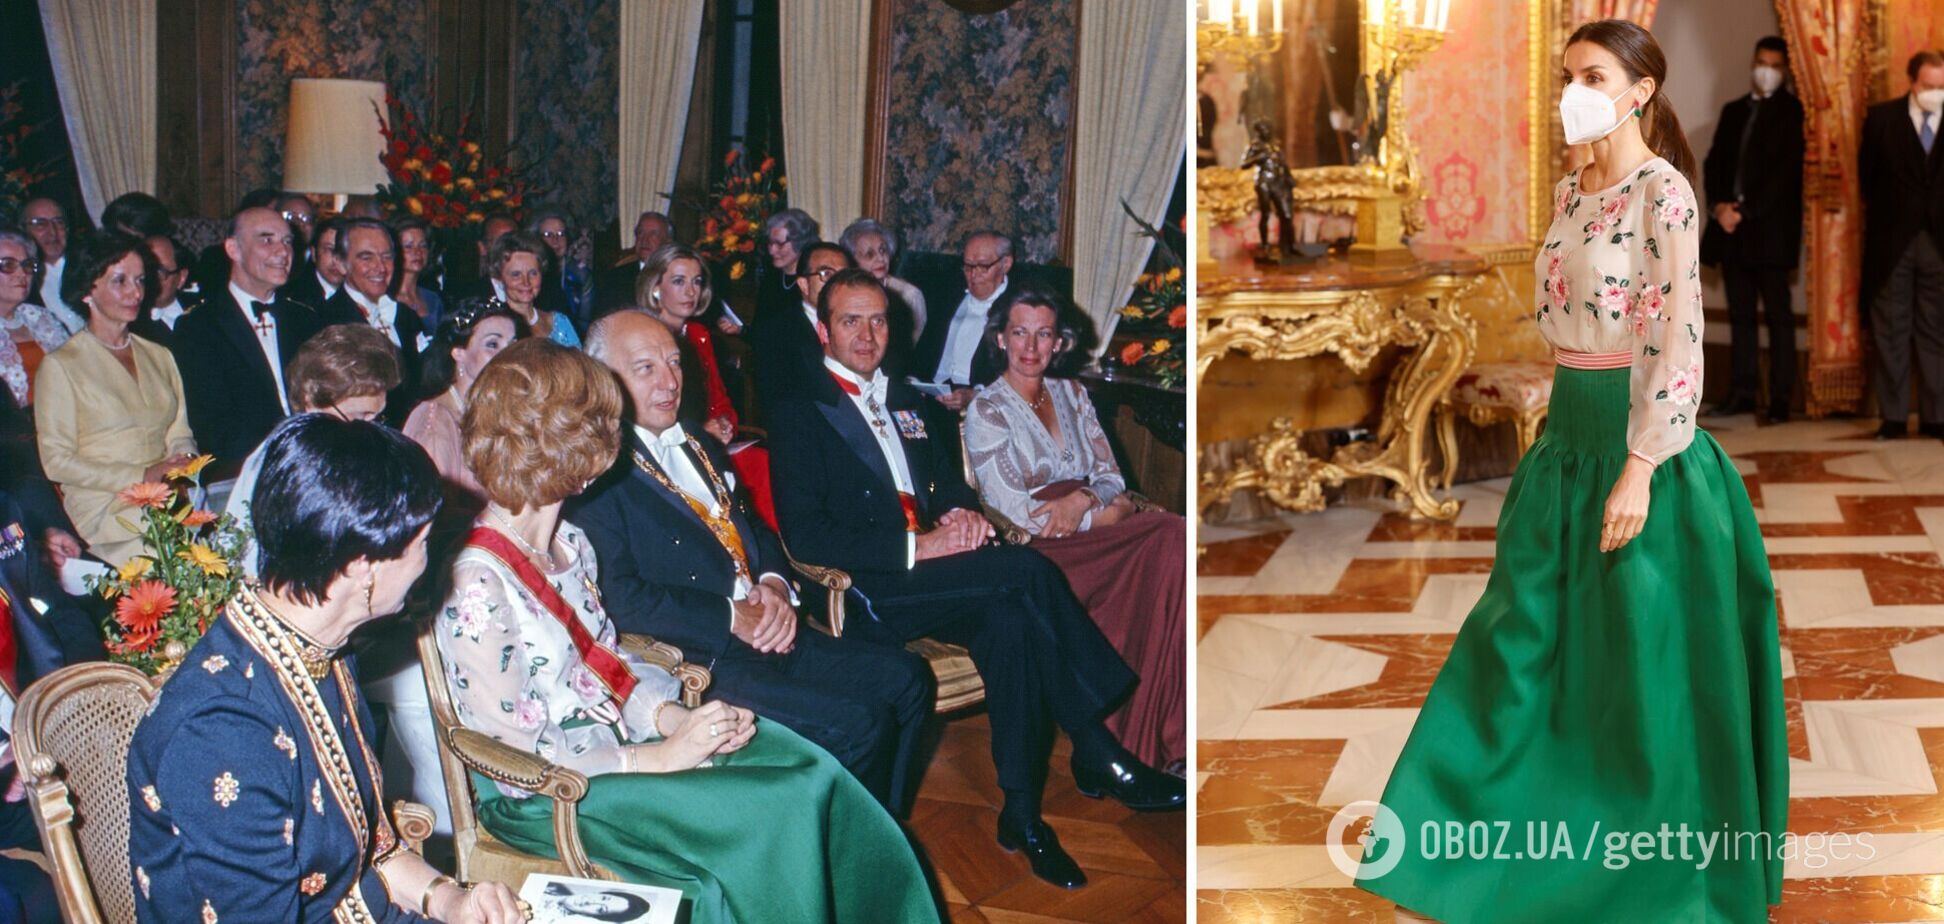 Королева Іспанії Летиція вийшла на публіку в сукні 1977 року. Фото тоді і тепер